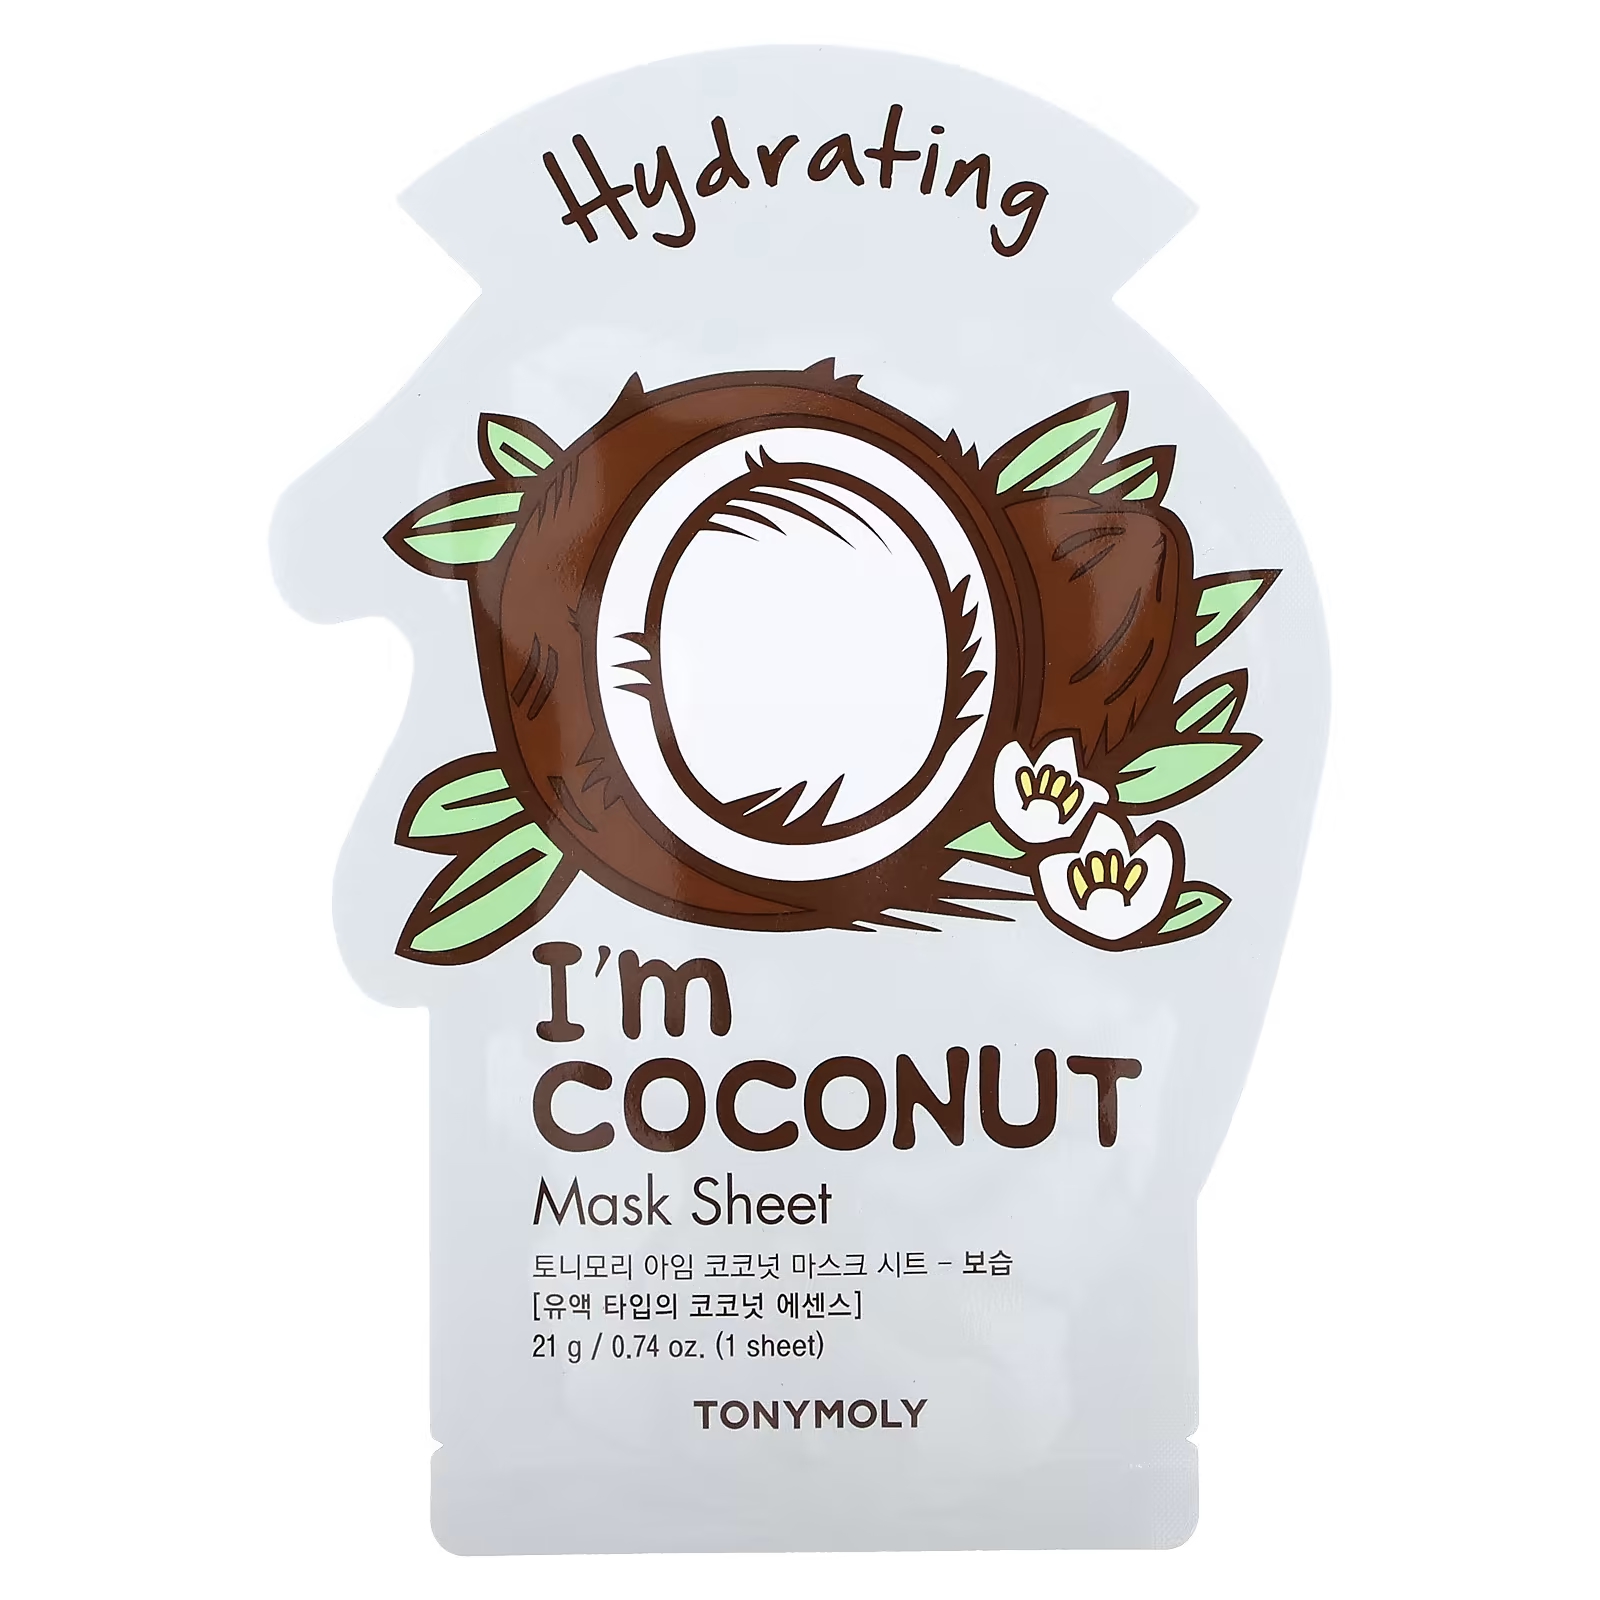 Tony Moly I'm Coconut Увлажняющая косметическая маска, 1 шт., 0,74 унции (21 г) tony moly i m coconut увлажняющая косметическая маска 1 шт 0 74 унции 21 г